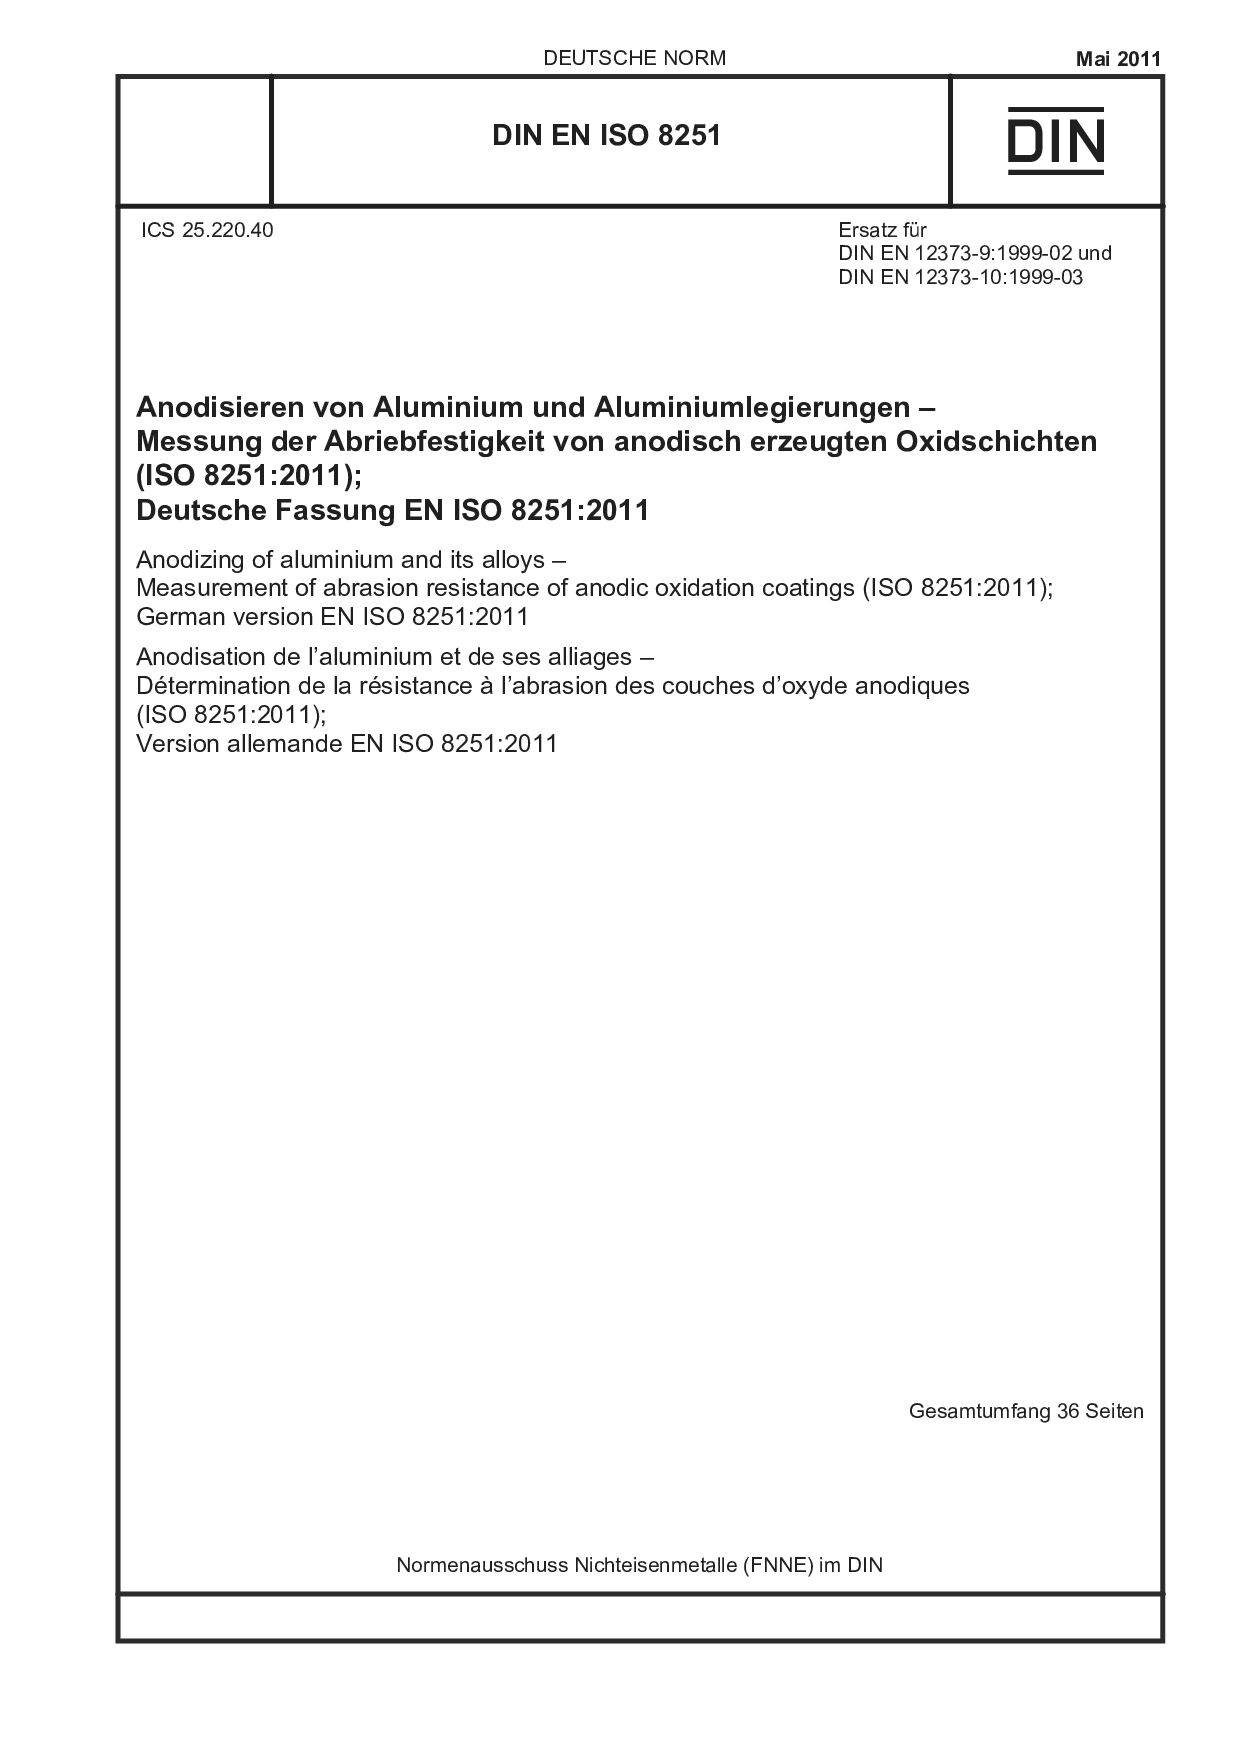 DIN EN ISO 8251:2011